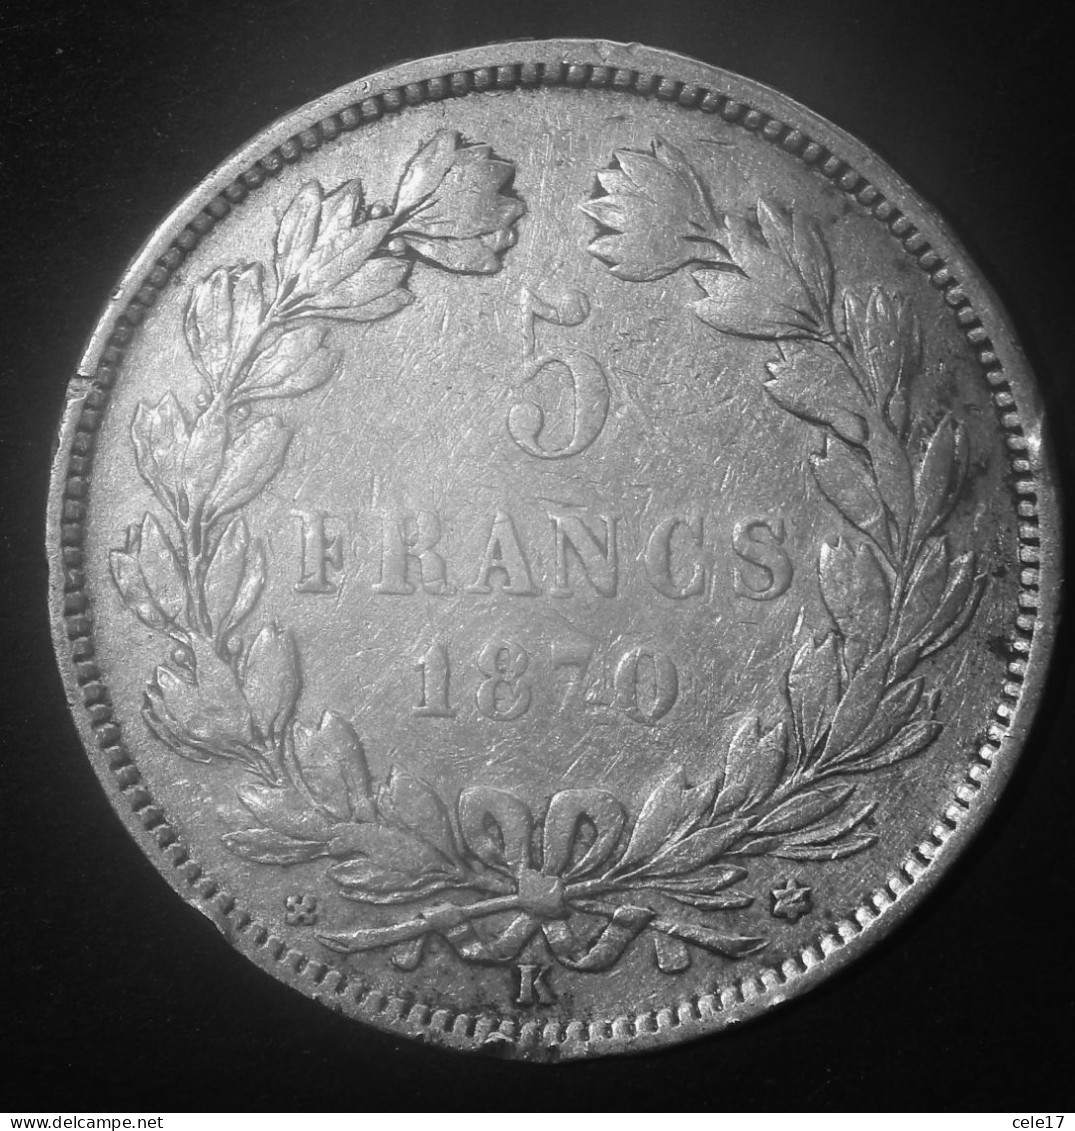 FRANCIA- CERES 5 FRANCHI 1870 ARGENTO- M/star- KM812.2 - 1870-1871 Regering Van Nationale Verdediging